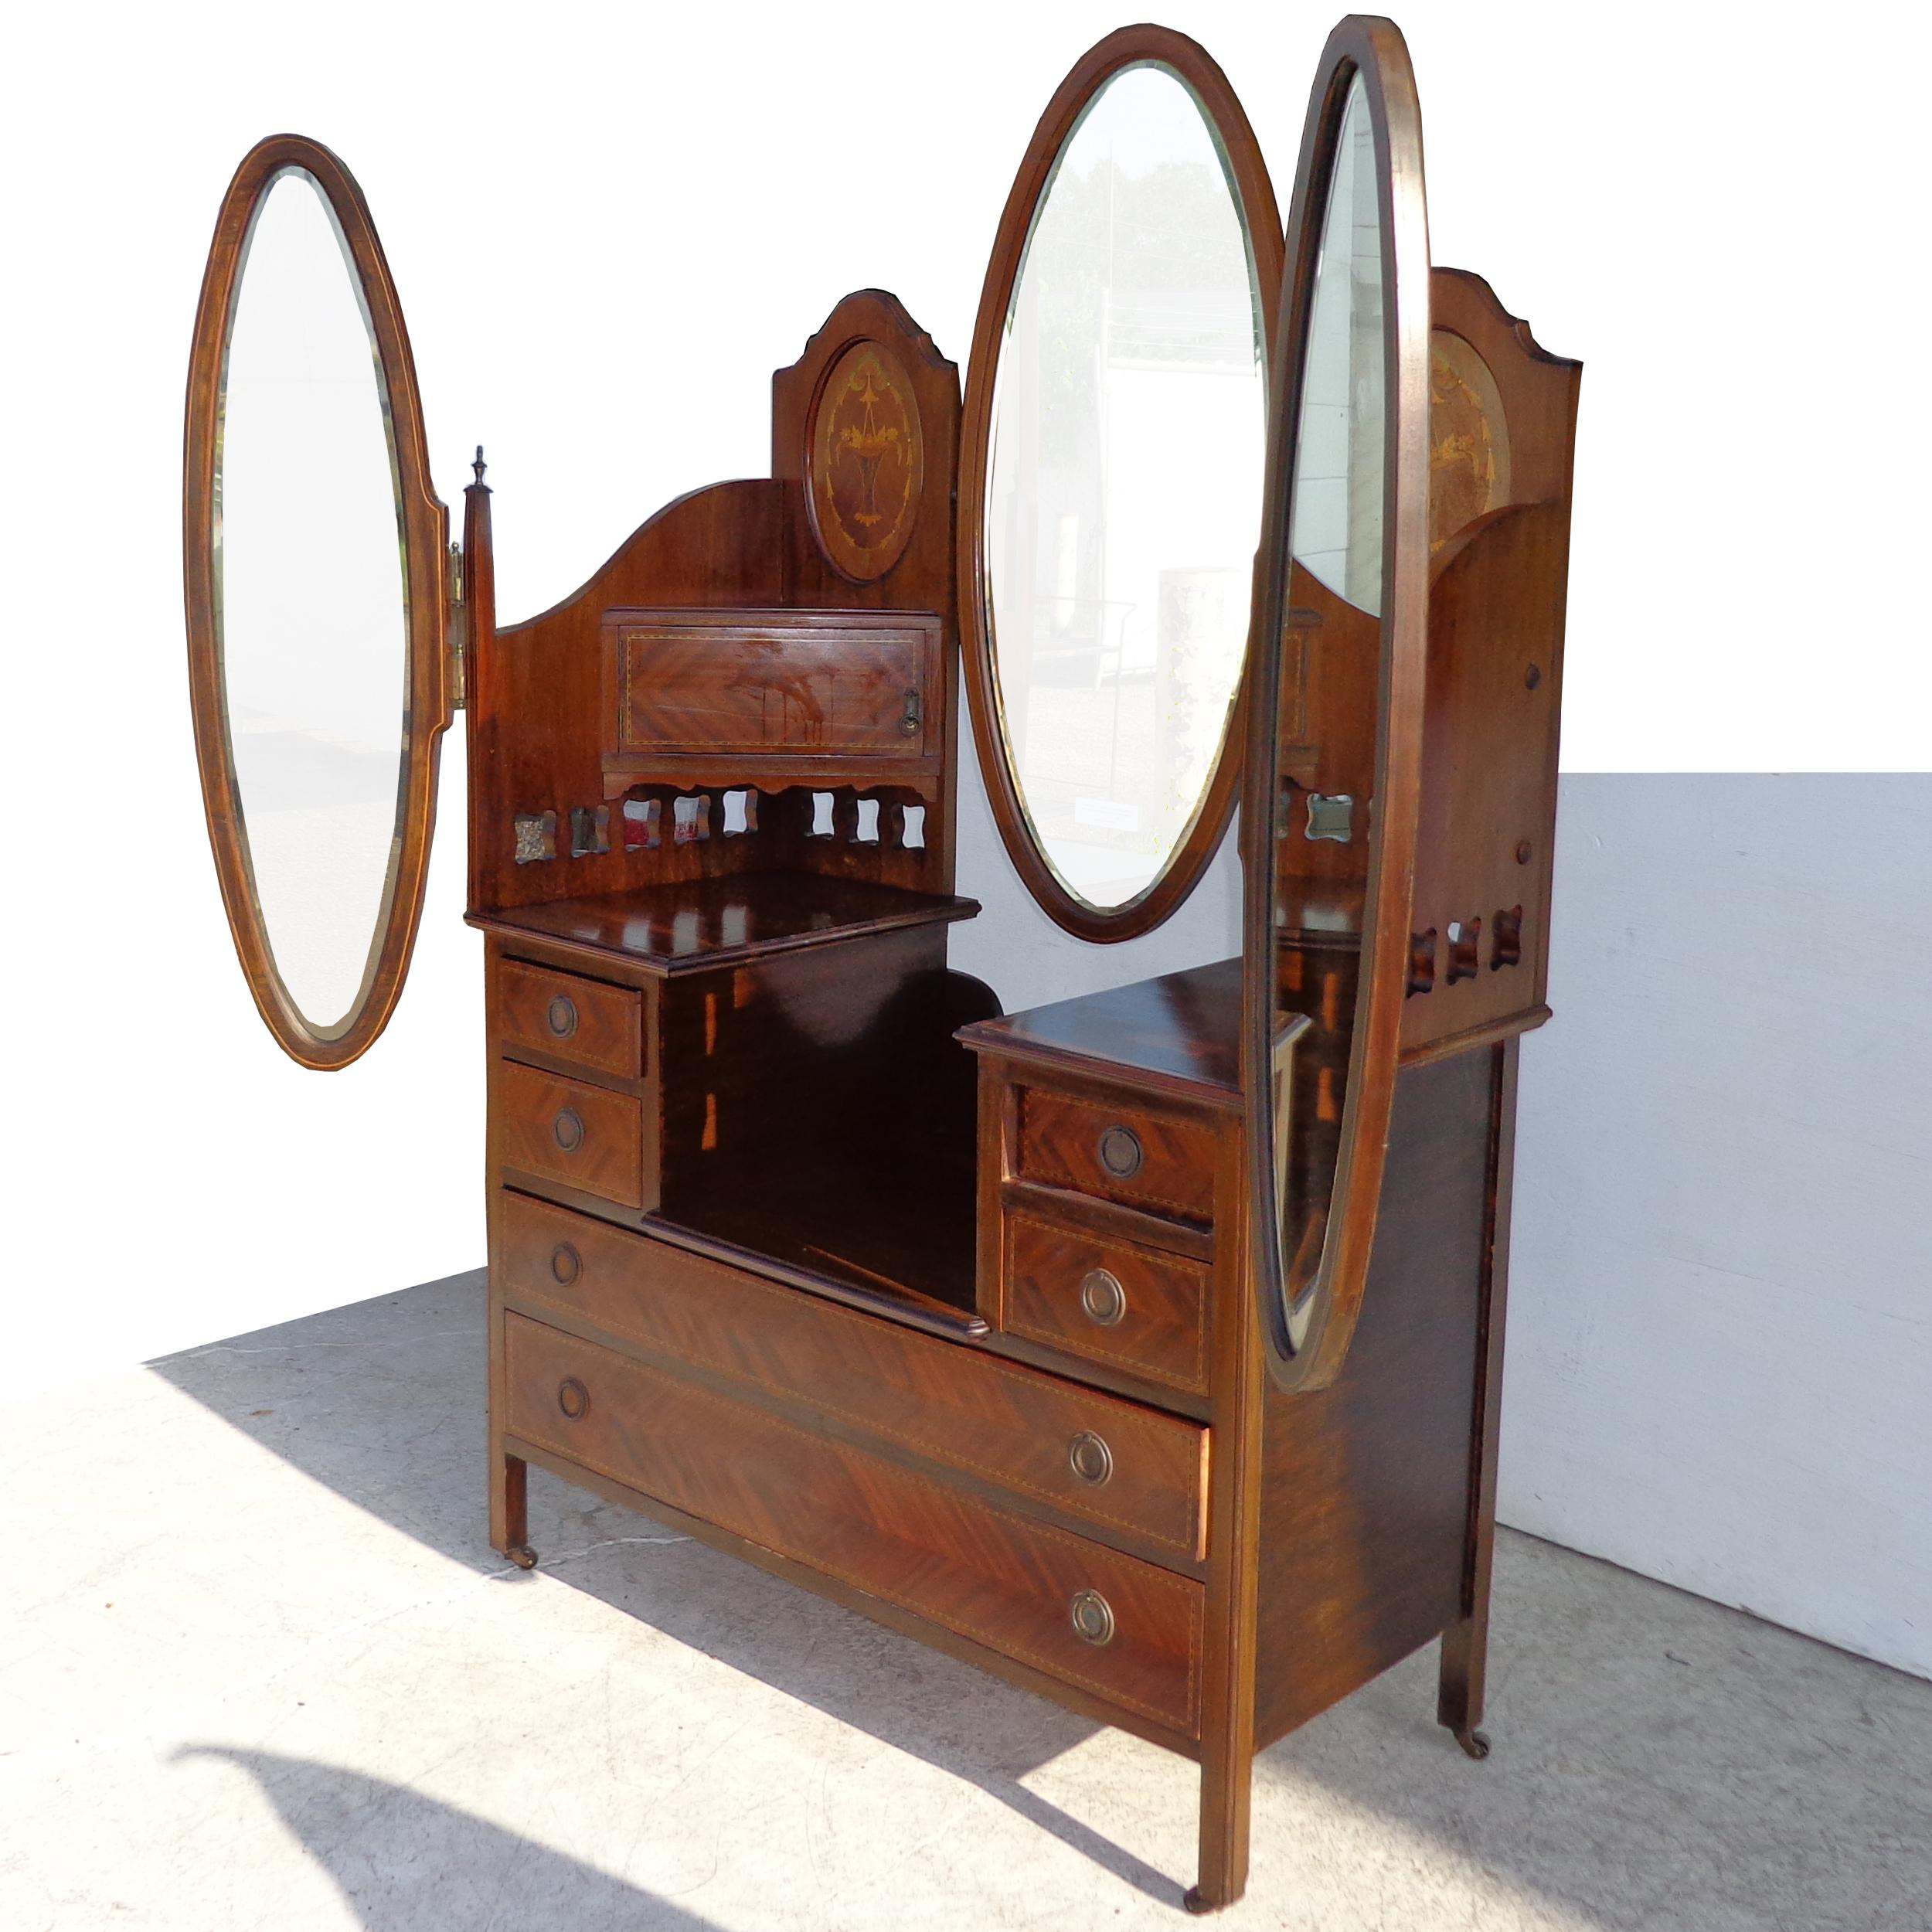 Vanité à triple miroir en acajou avec miroirs réglables
1900s

Ce superbe meuble-lavabo est doté d'un dossier surélevé avec des panneaux ovales en ronce et en parquet. Un miroir central ovale flanqué de deux miroirs réglables de chaque